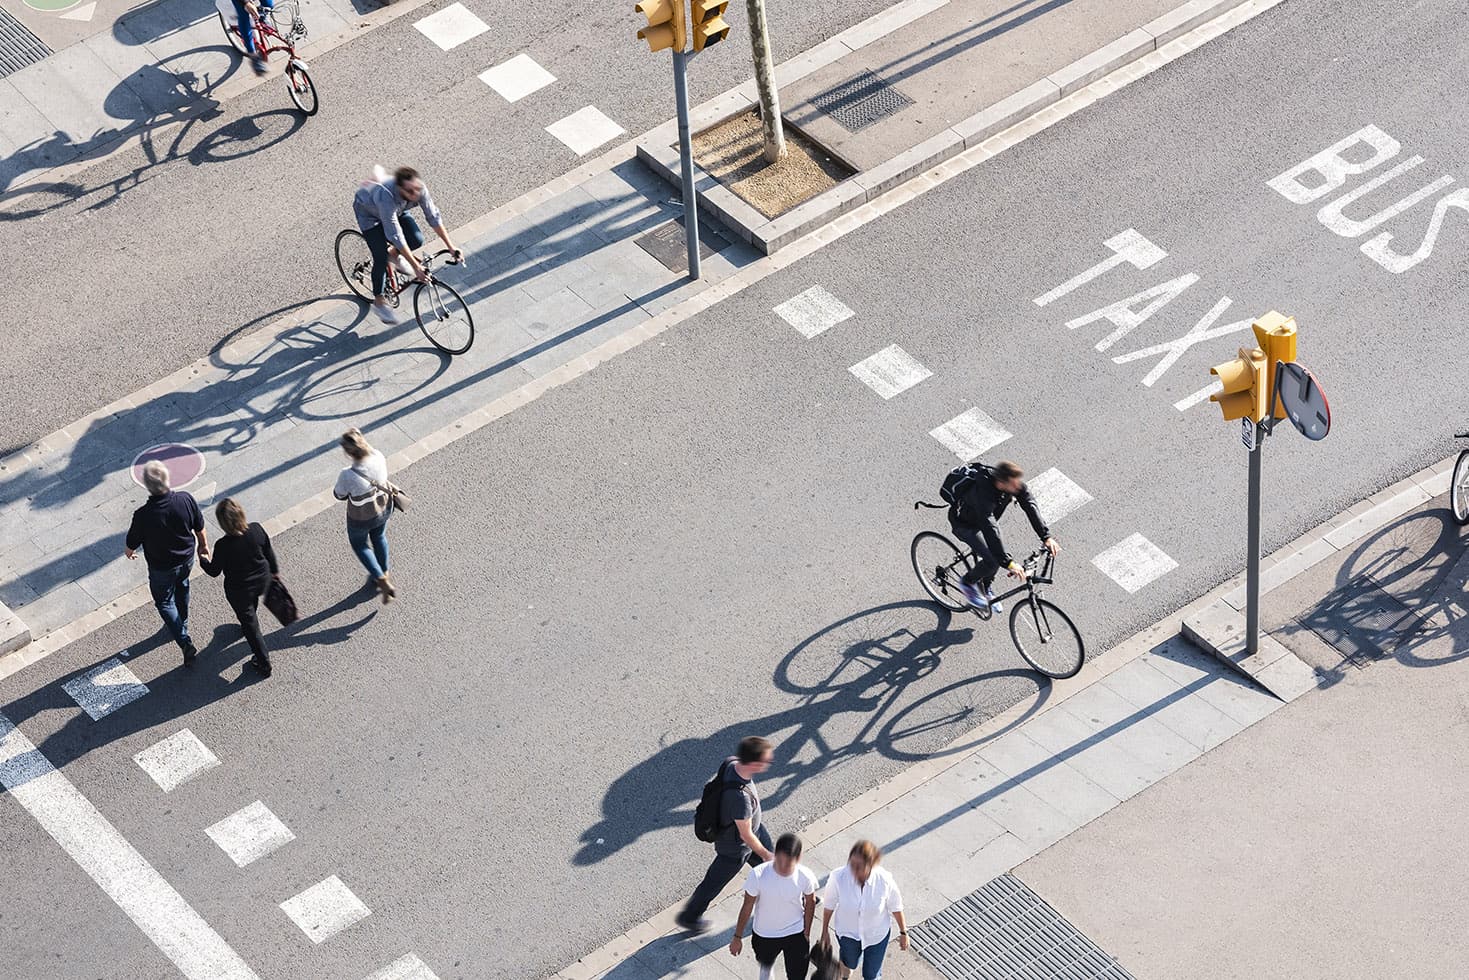 Comment la transformation des espaces de circulation urbains pousse peu à peu la voiture en dehors des villes ?